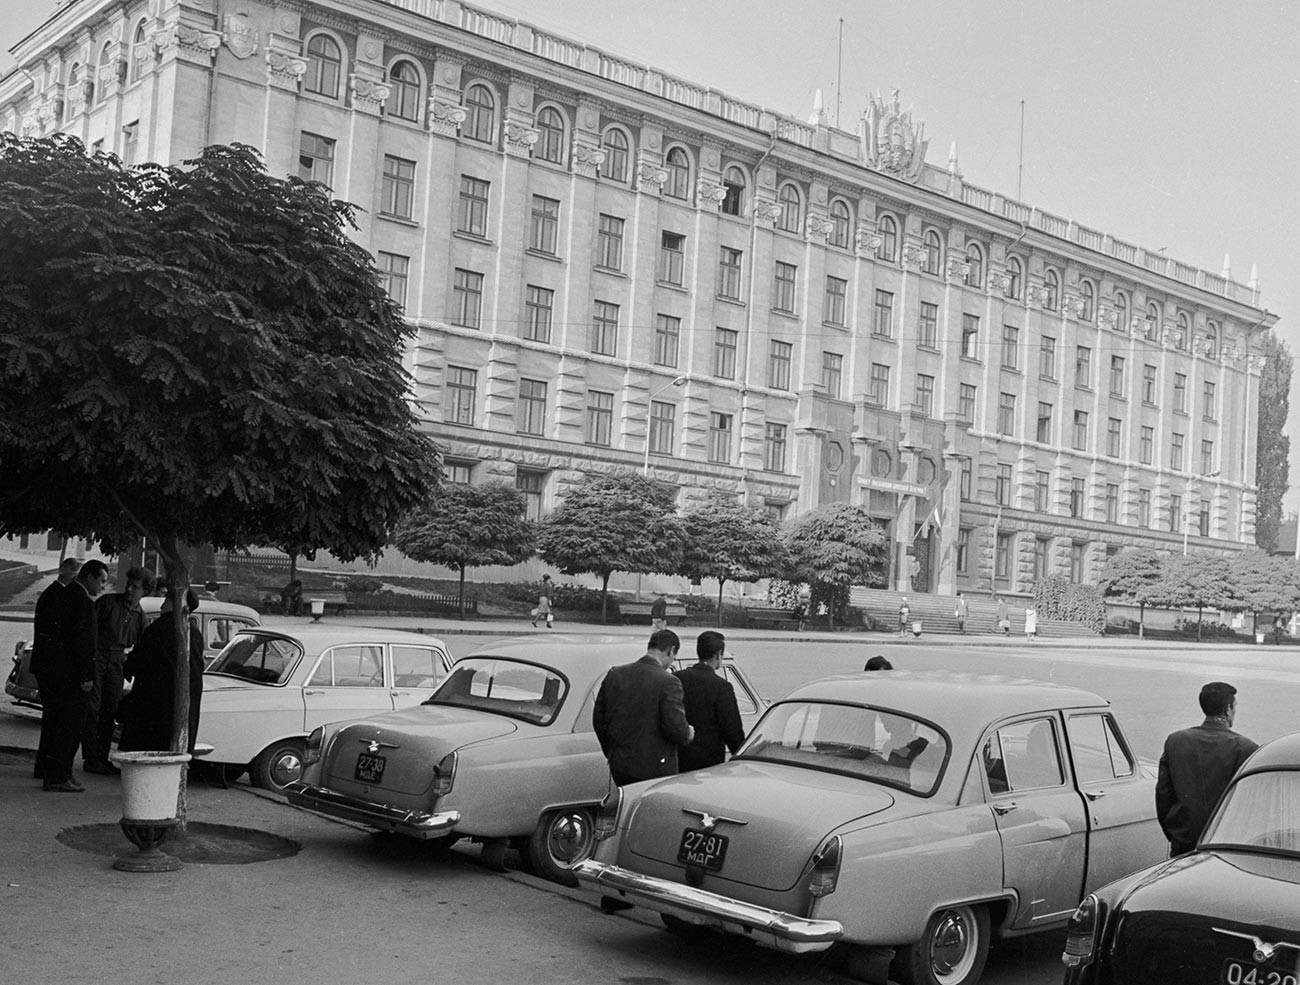 Akademija znanosti Moldavske SSR v Kišinjevu, 1966

